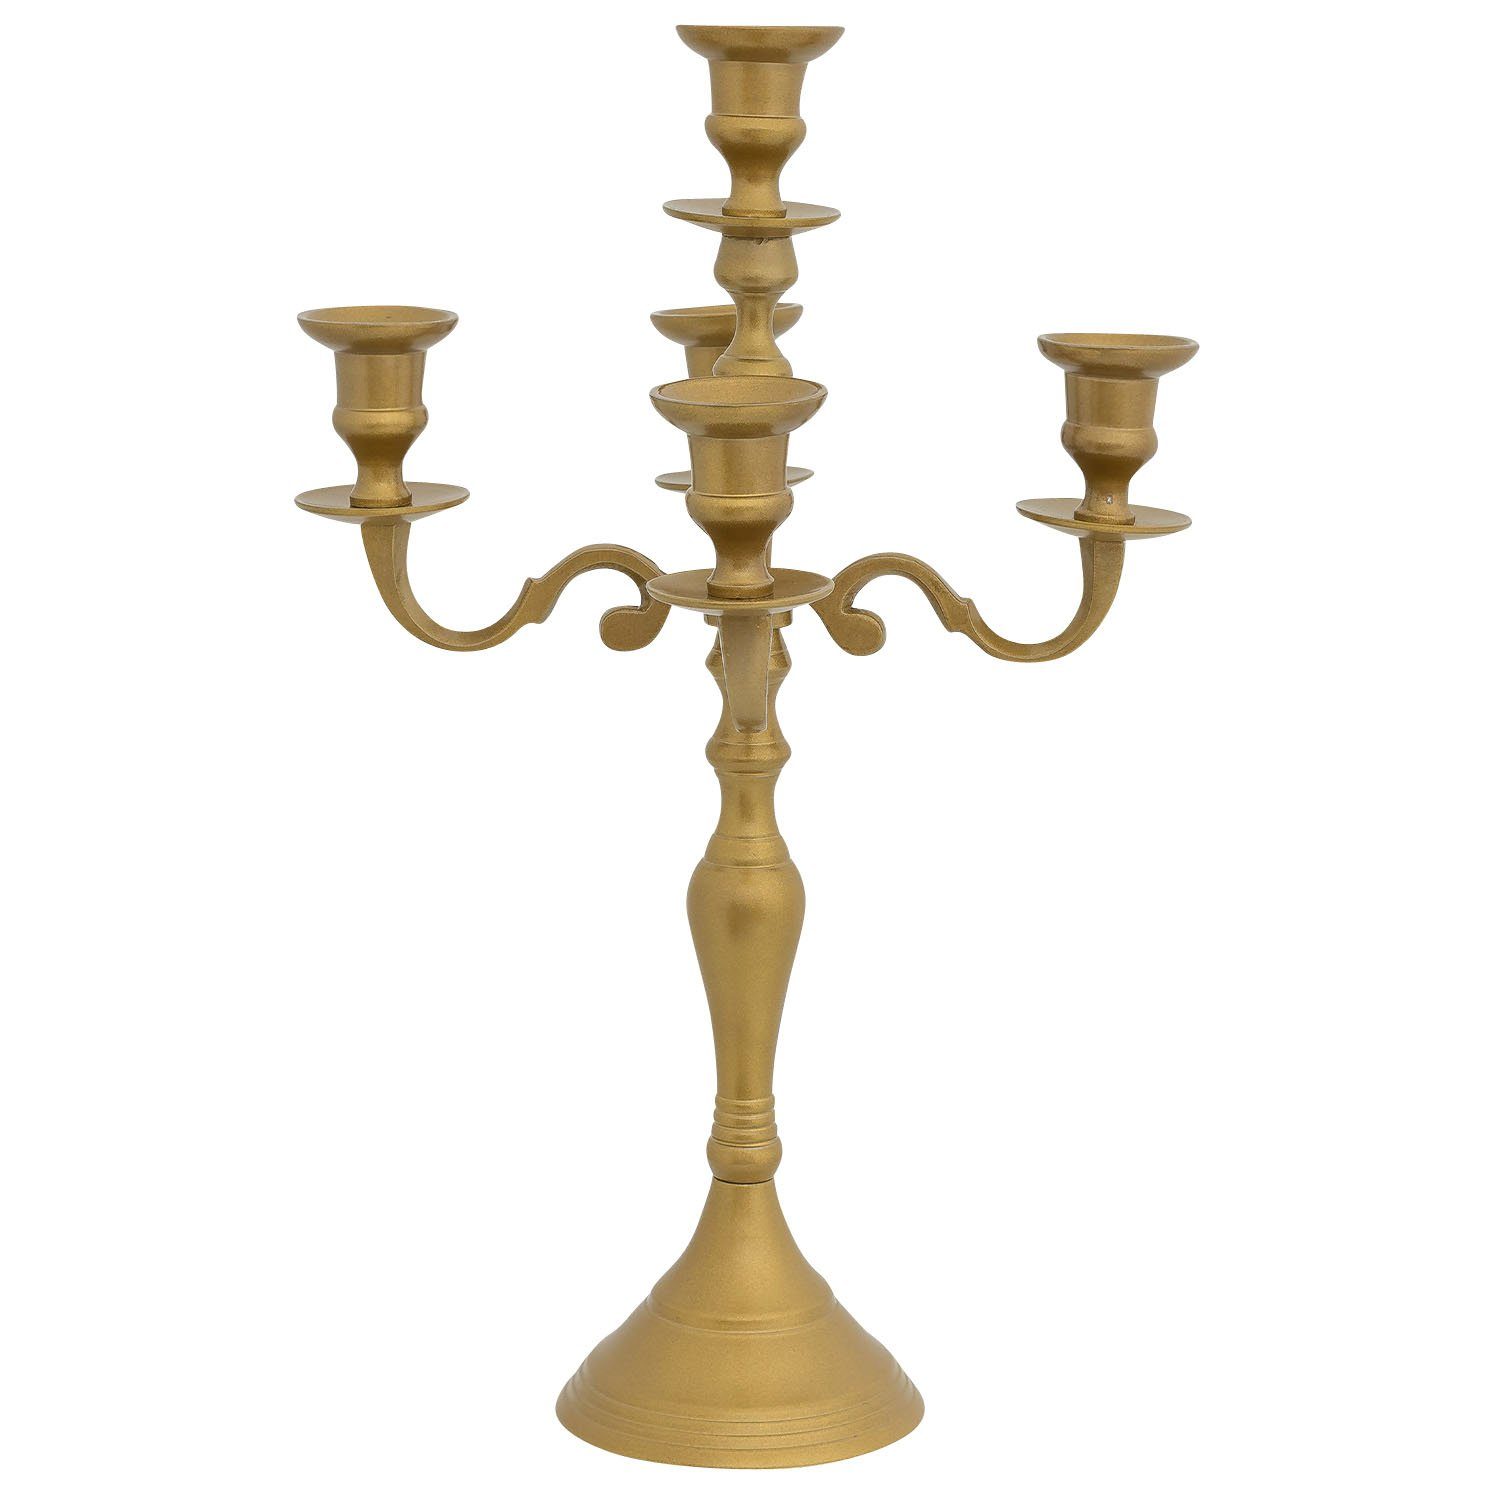 Aubaho Kerzenständer Kerzenhalter Kerzenständer 5-armig gold Aluminium Antik-Stil 40cm